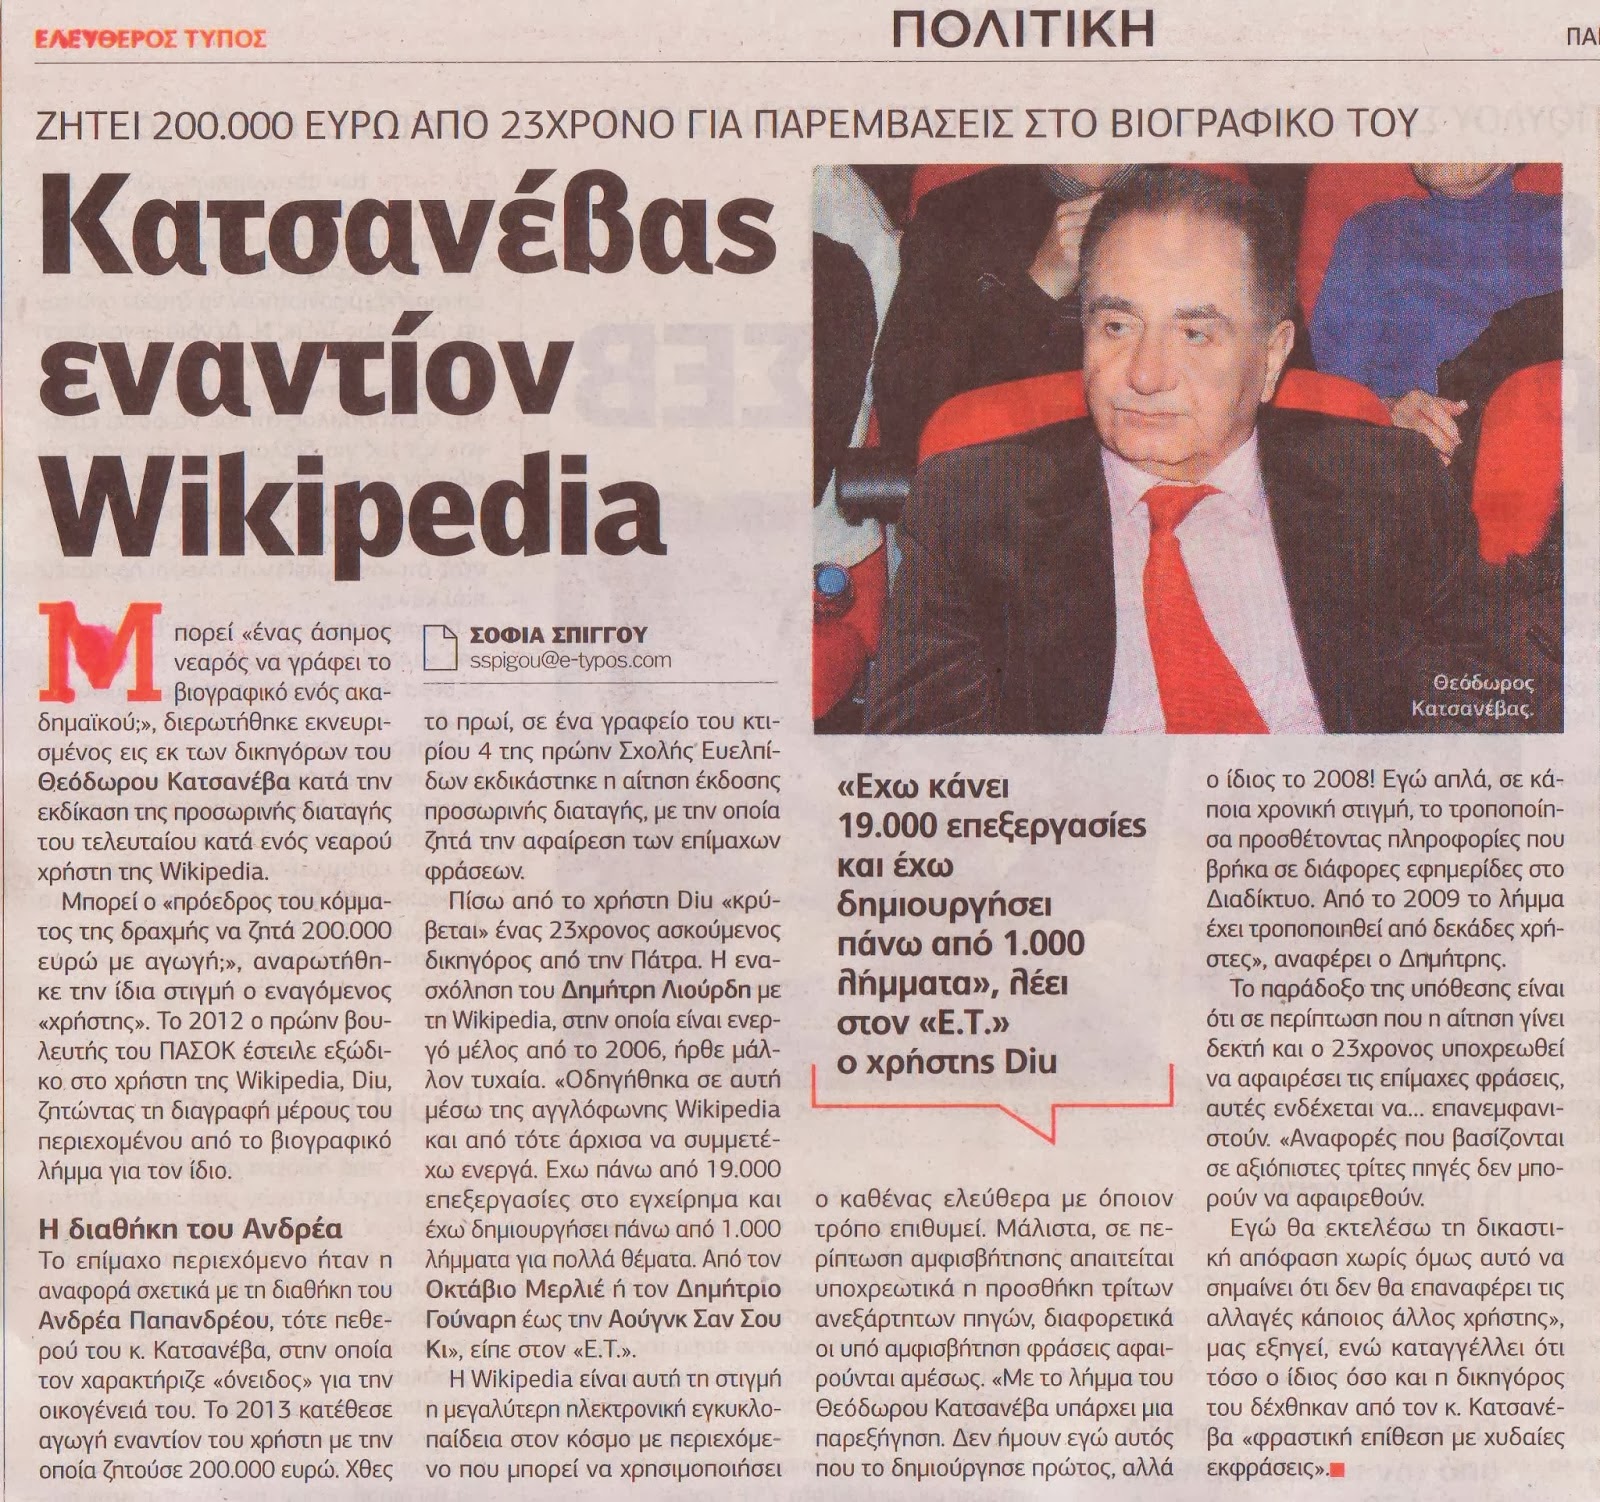 Ο πολεμος που ξεκινησε ο Κατσανεβας με τη Βικιπαιδεια γινεται παγκοσμιος